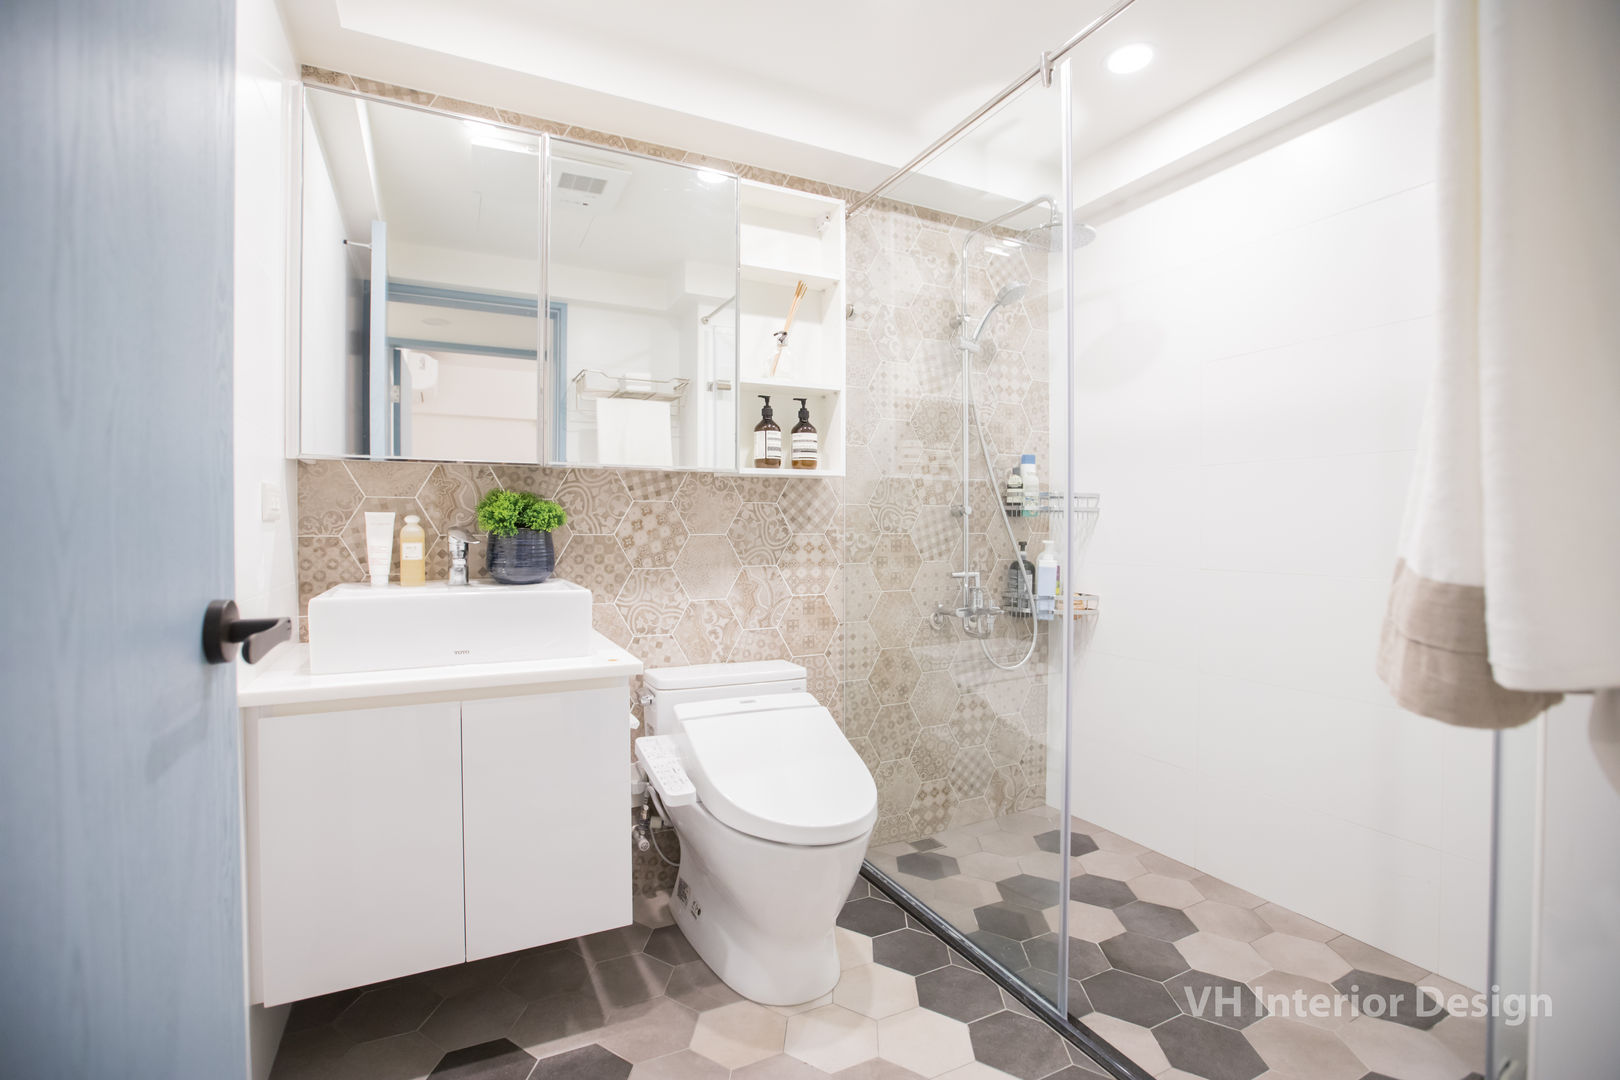 板橋施公館, VH INTERIOR DESIGN VH INTERIOR DESIGN Modern bathroom